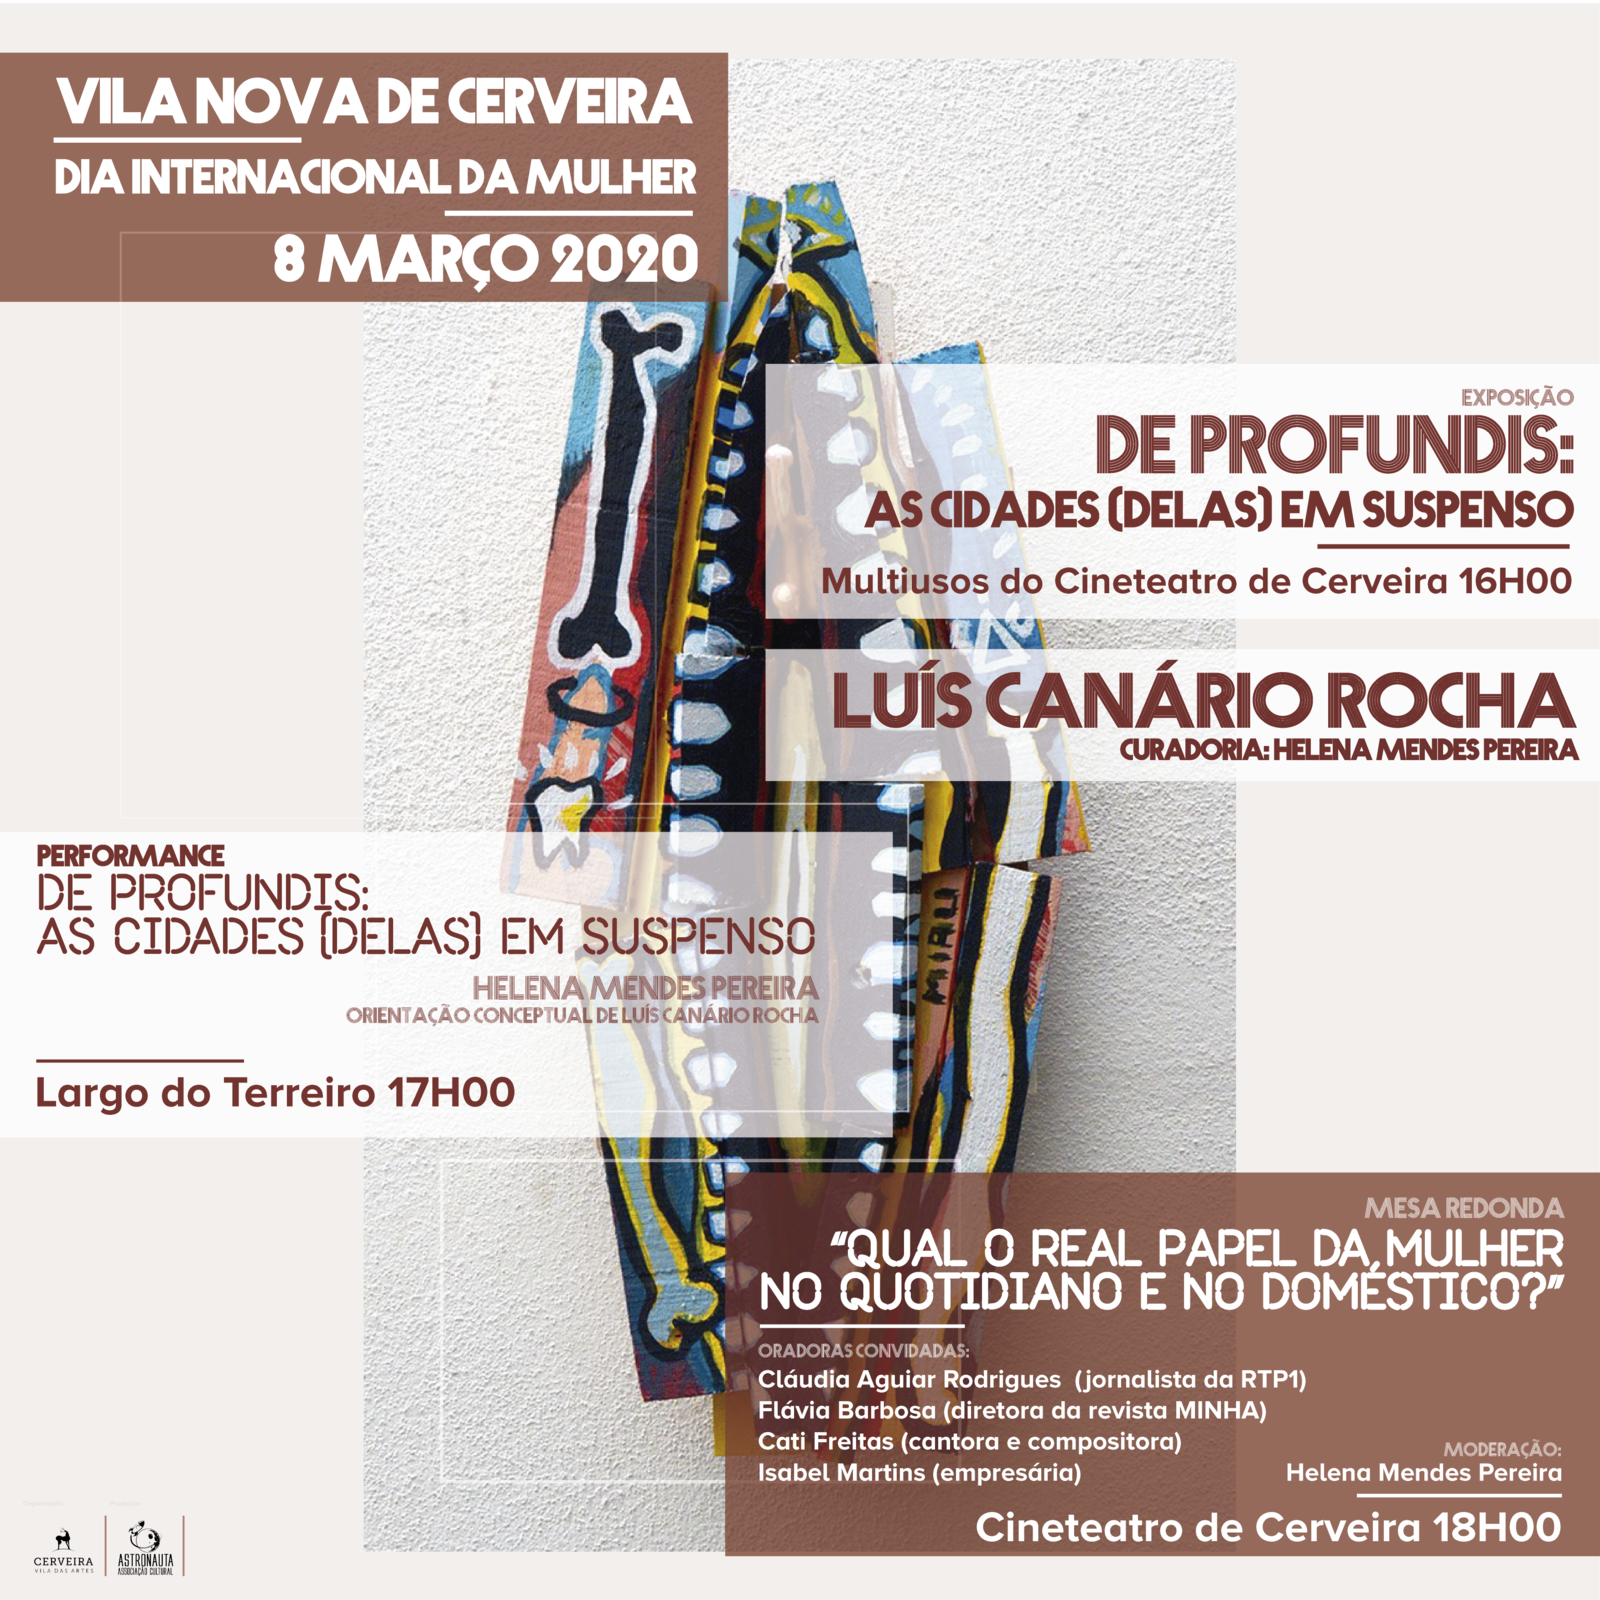 Vila Nova de Cerveira / Projeto artístico interativo e 